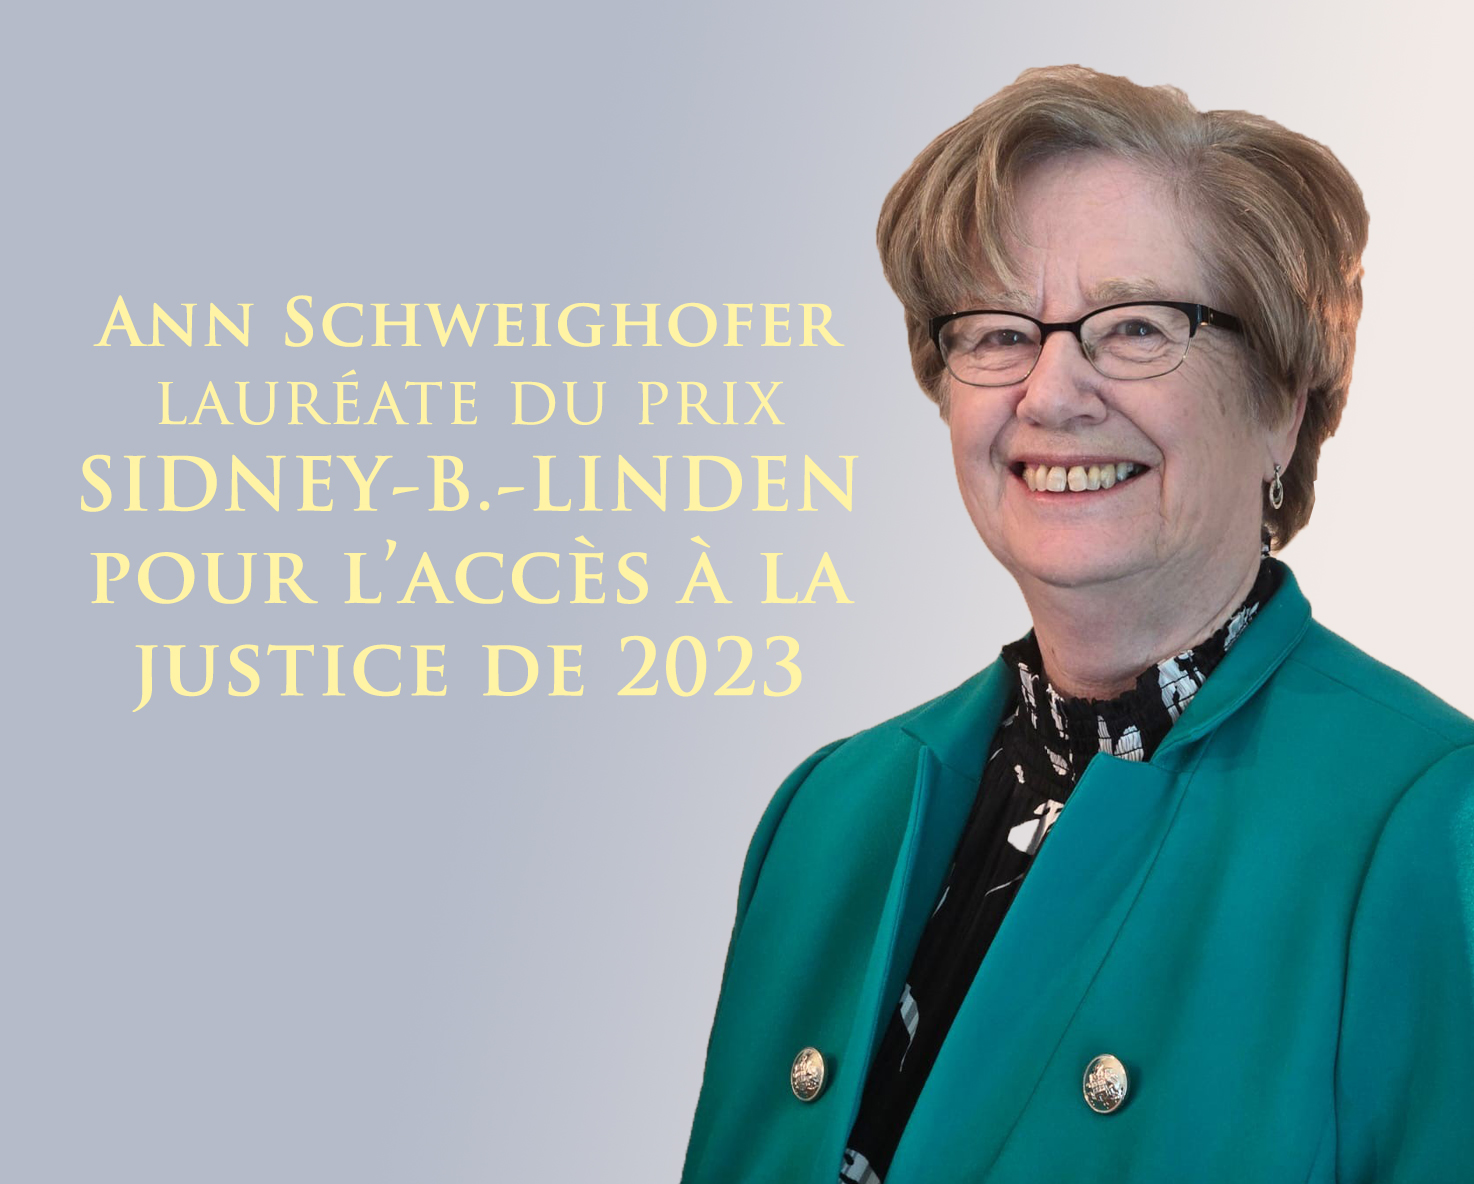 Ann Schweighofer lauréate du prix Sidney-B.-Linden pour l’accès à la justice de 2023